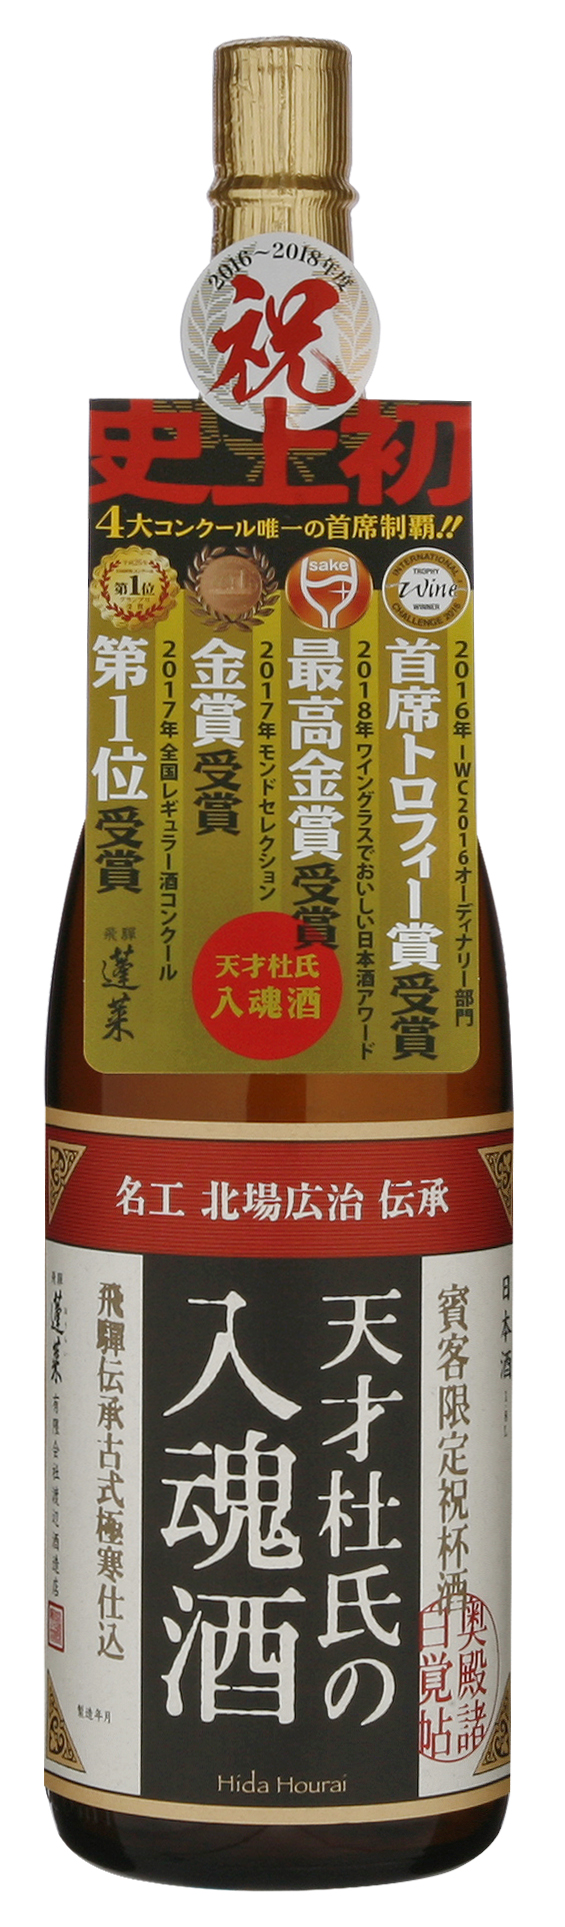 売れる日本酒特集 - 日本最大級の売れる酒・日本酒のデータバンク SAKE 